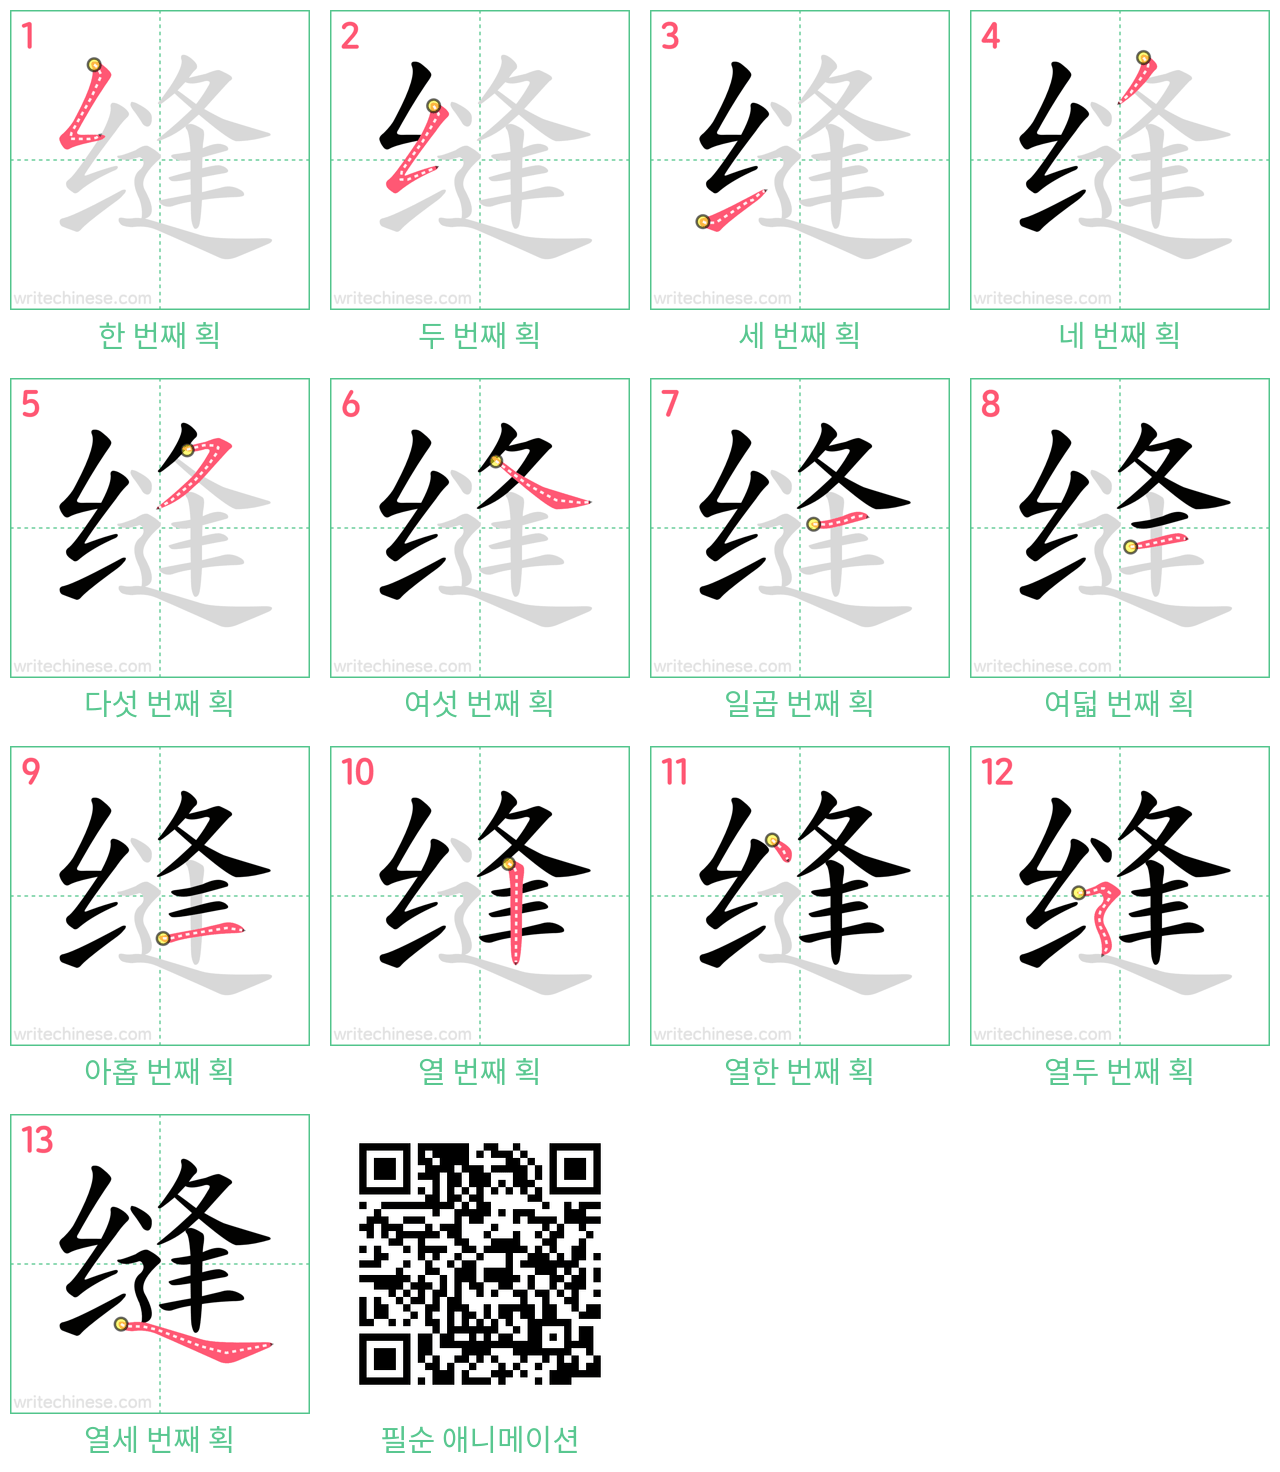 缝 step-by-step stroke order diagrams